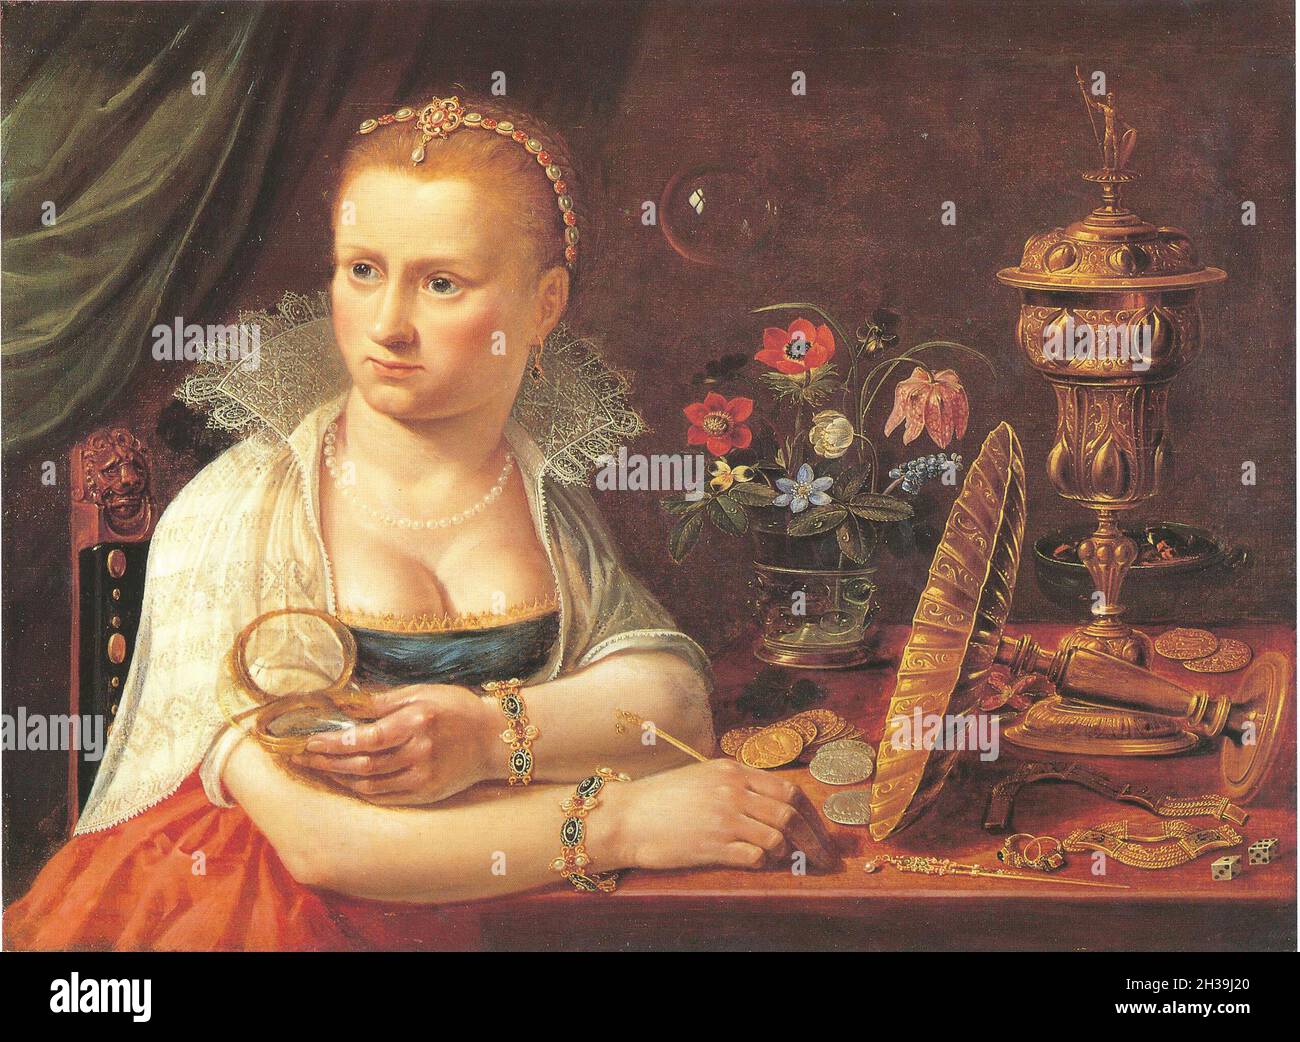 Vanitas peinture par Clara Peeters - la femme dans la peinture est probablement l'artiste - 1618 Banque D'Images